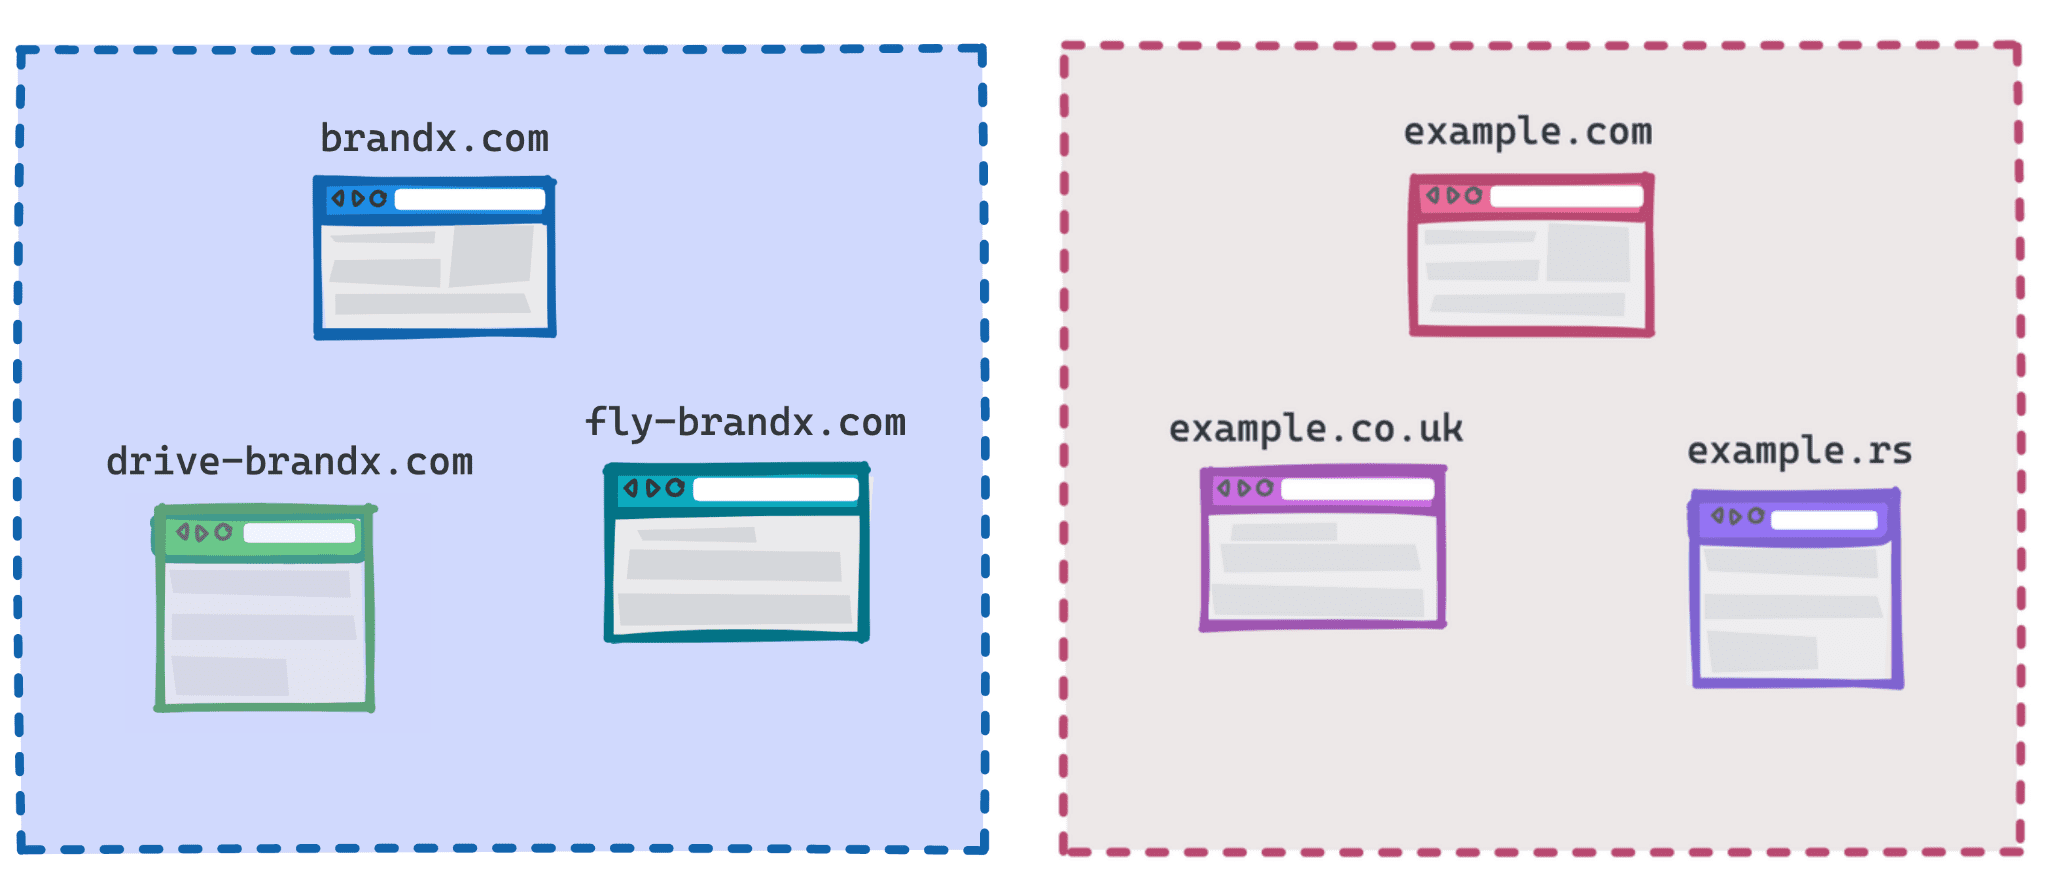 Diagram przedstawiający jedną grupę: markx.com, fly-brandx.com i drive-brandx.com jako jedną grupę, a inną grupę example.com, example.rs, example.co.uk.